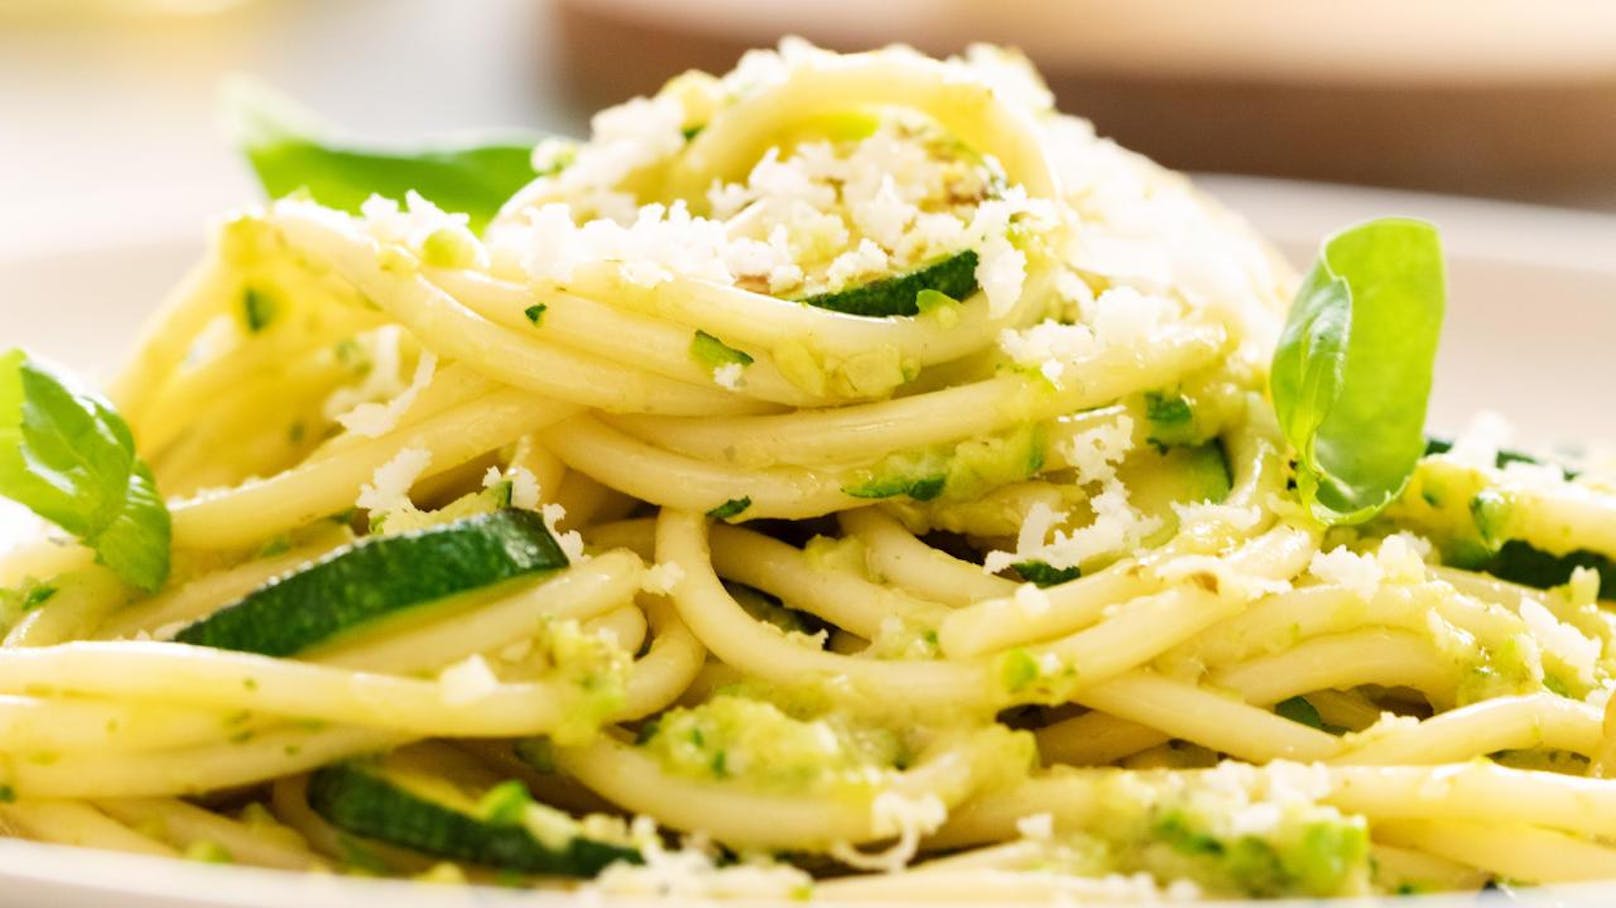 Spaghetti alla Nerano mit Pesto alla Genovese